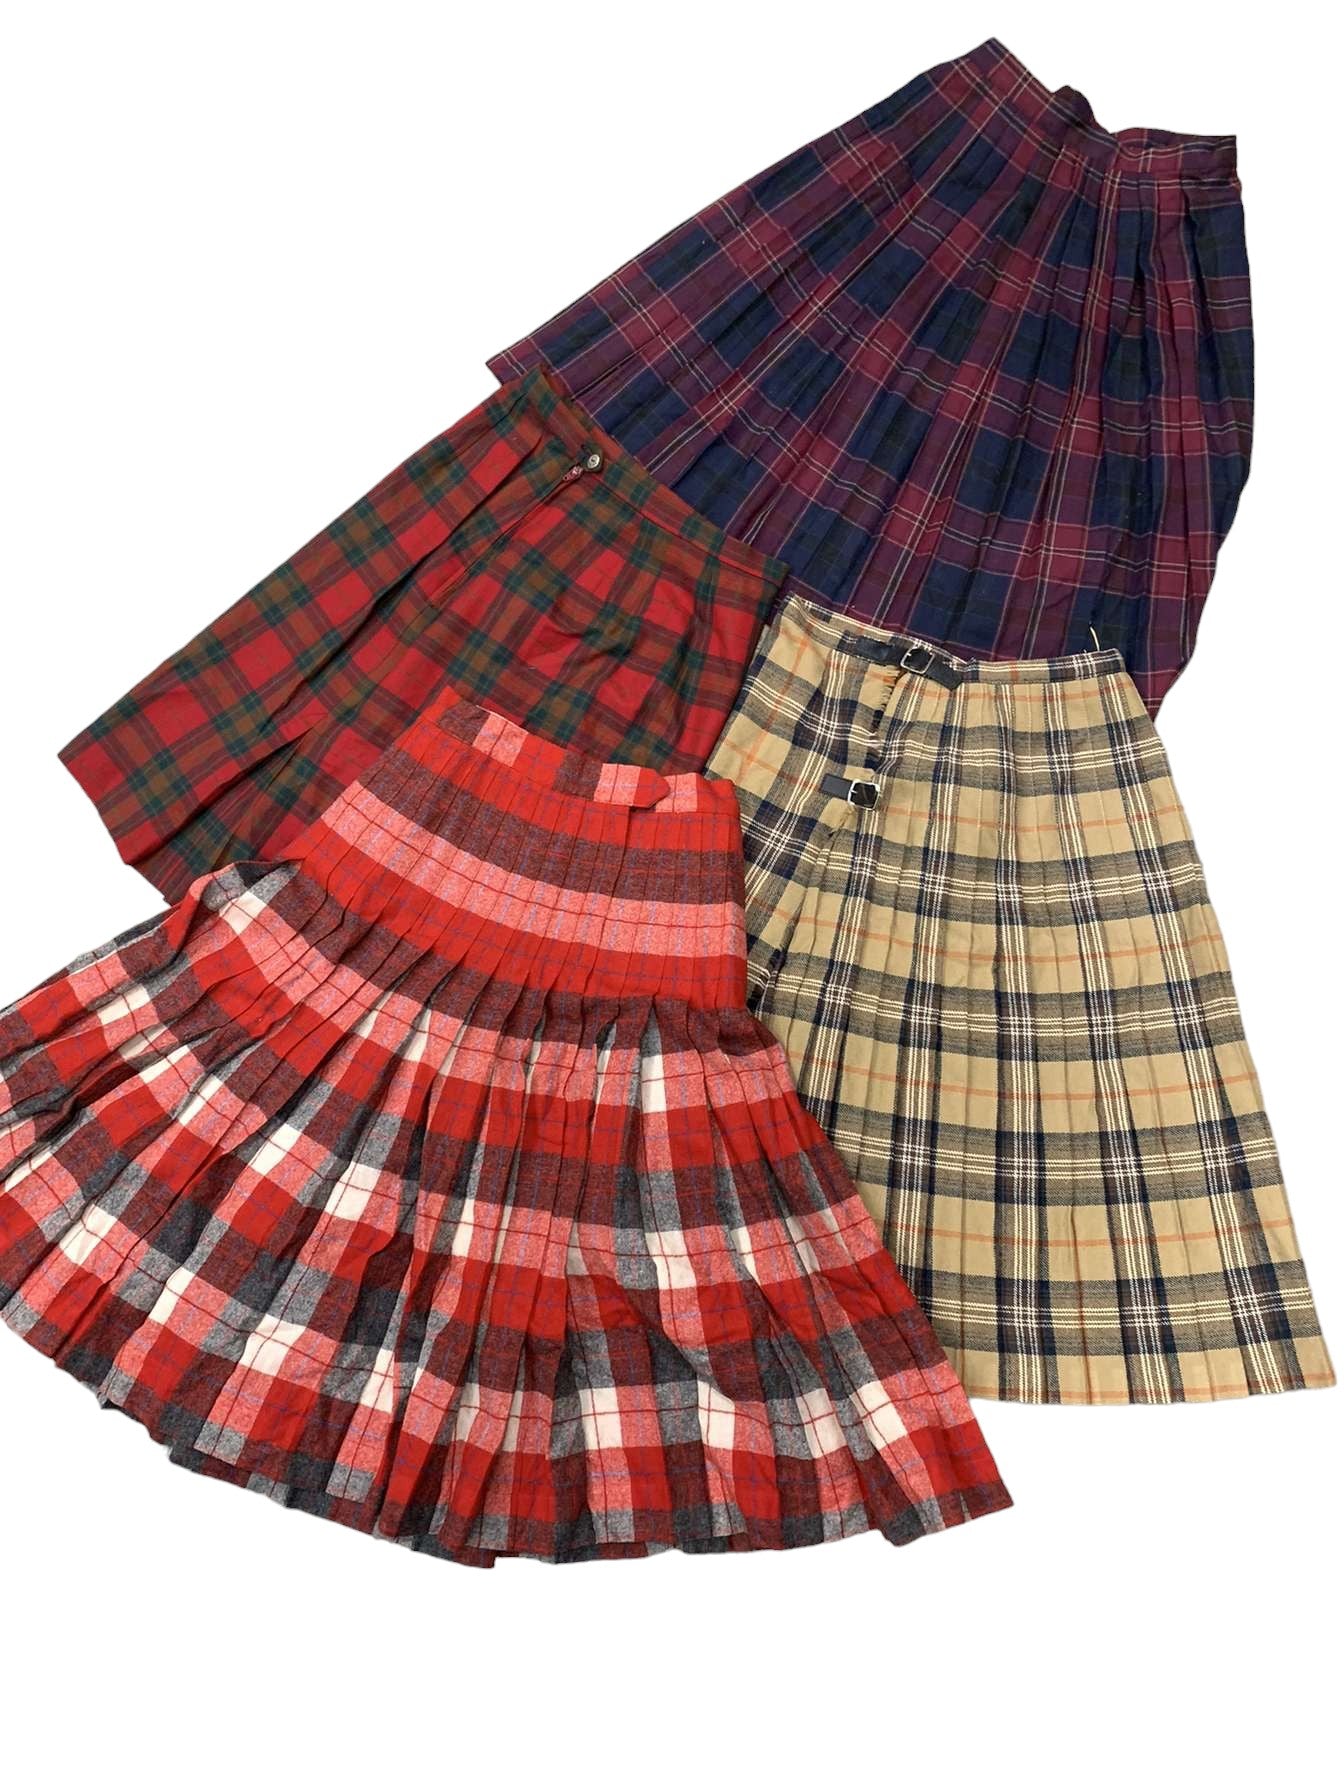 Vintage Wool/Pleated Skirts Wholesale